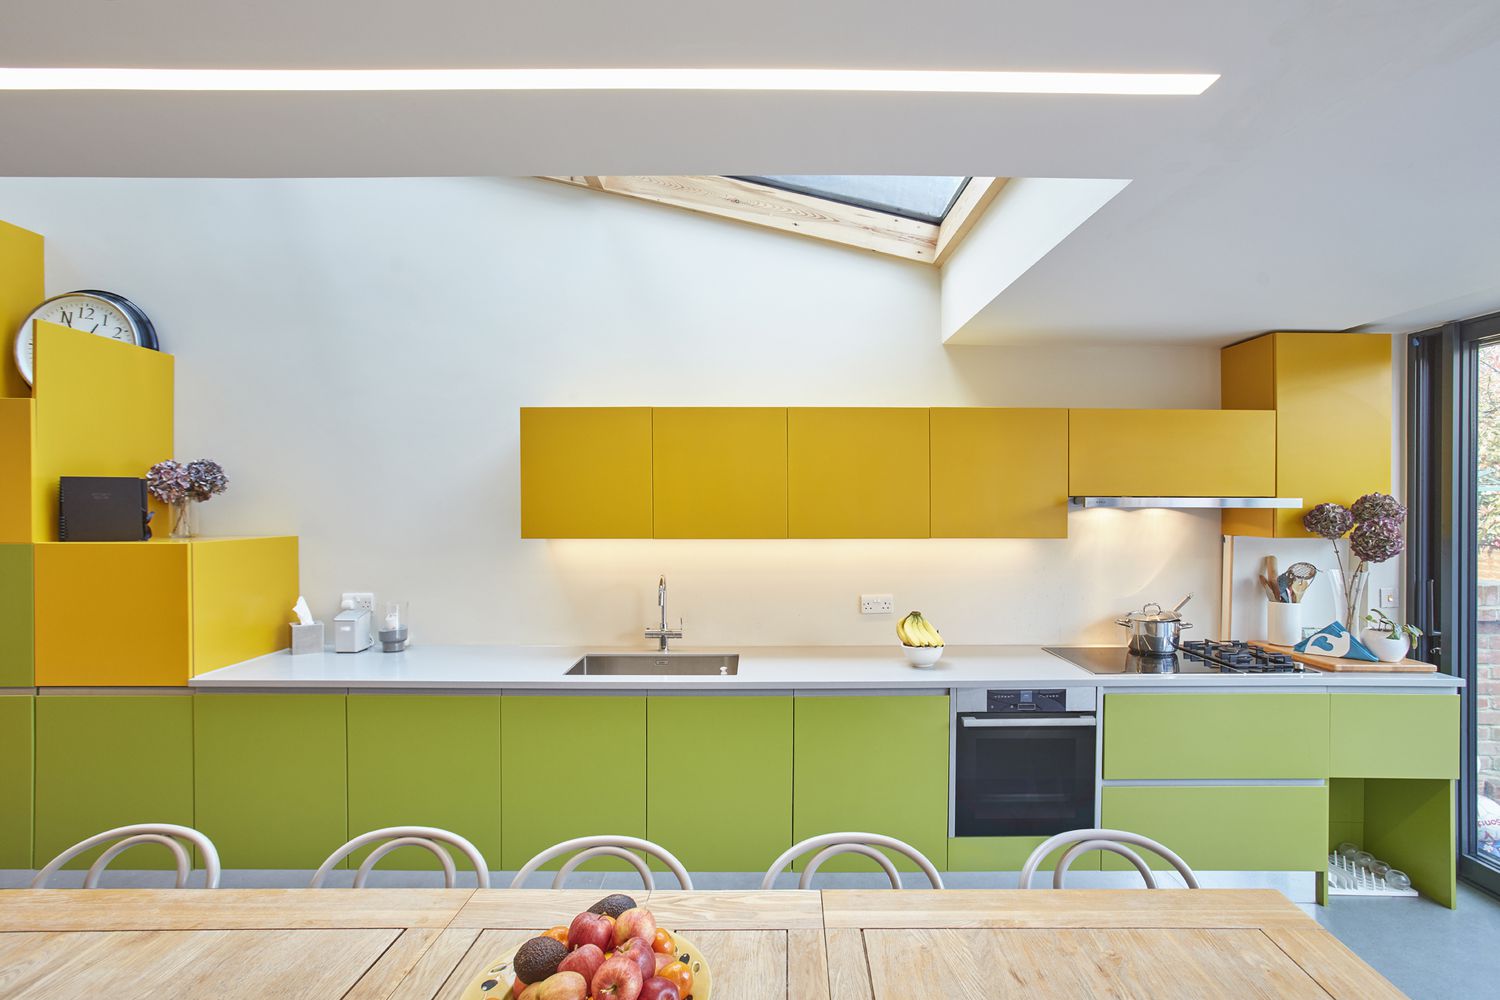 Cozinha com armários verdes embaixo do balcão e armários superiores amarelos